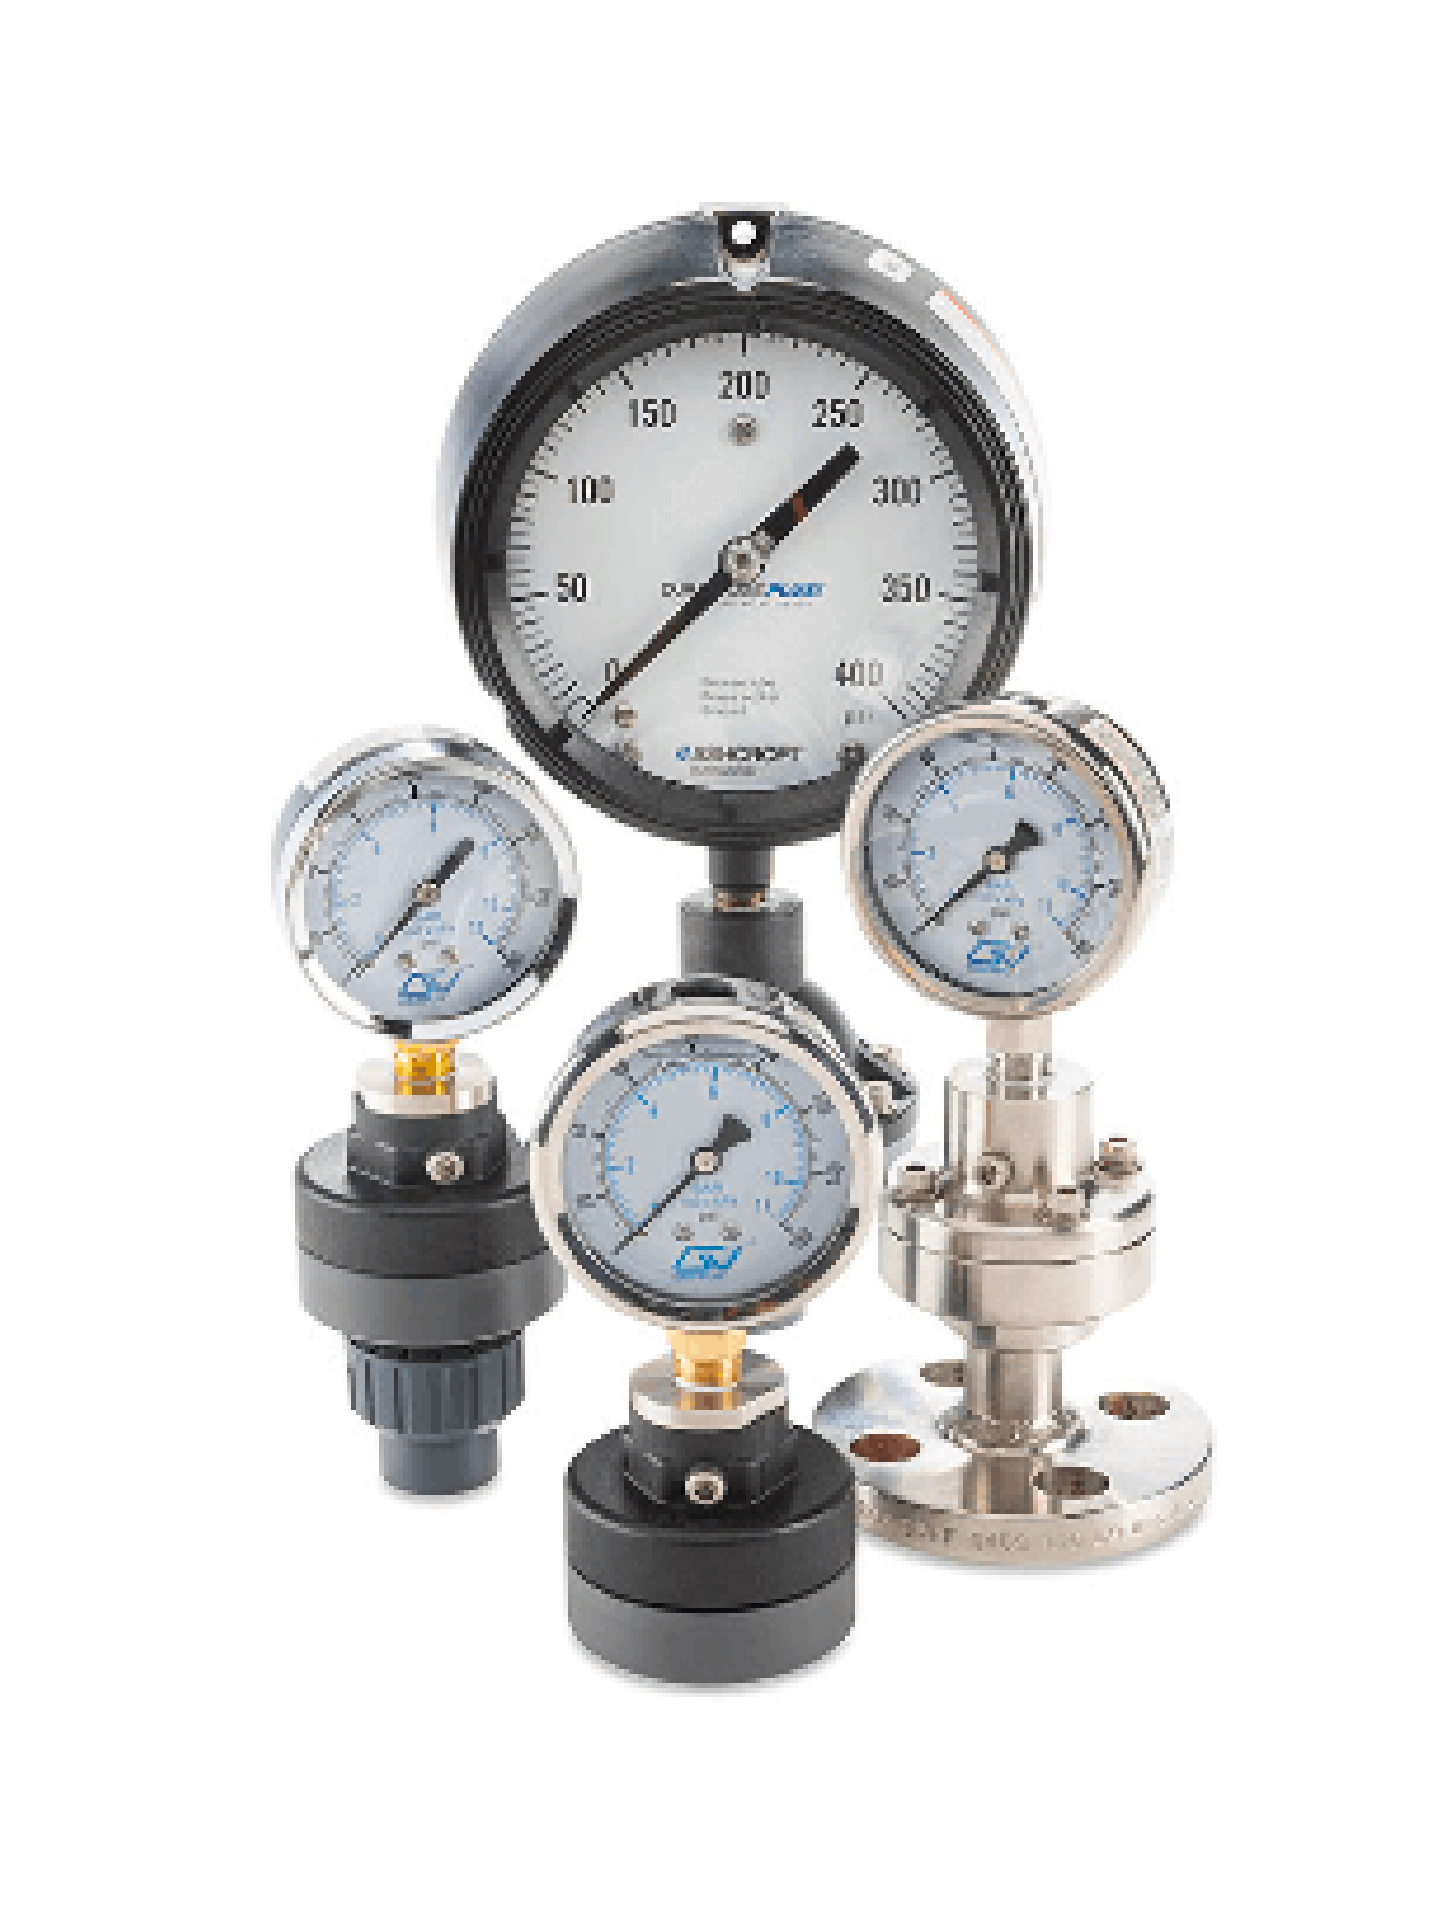 Pressure relief valves